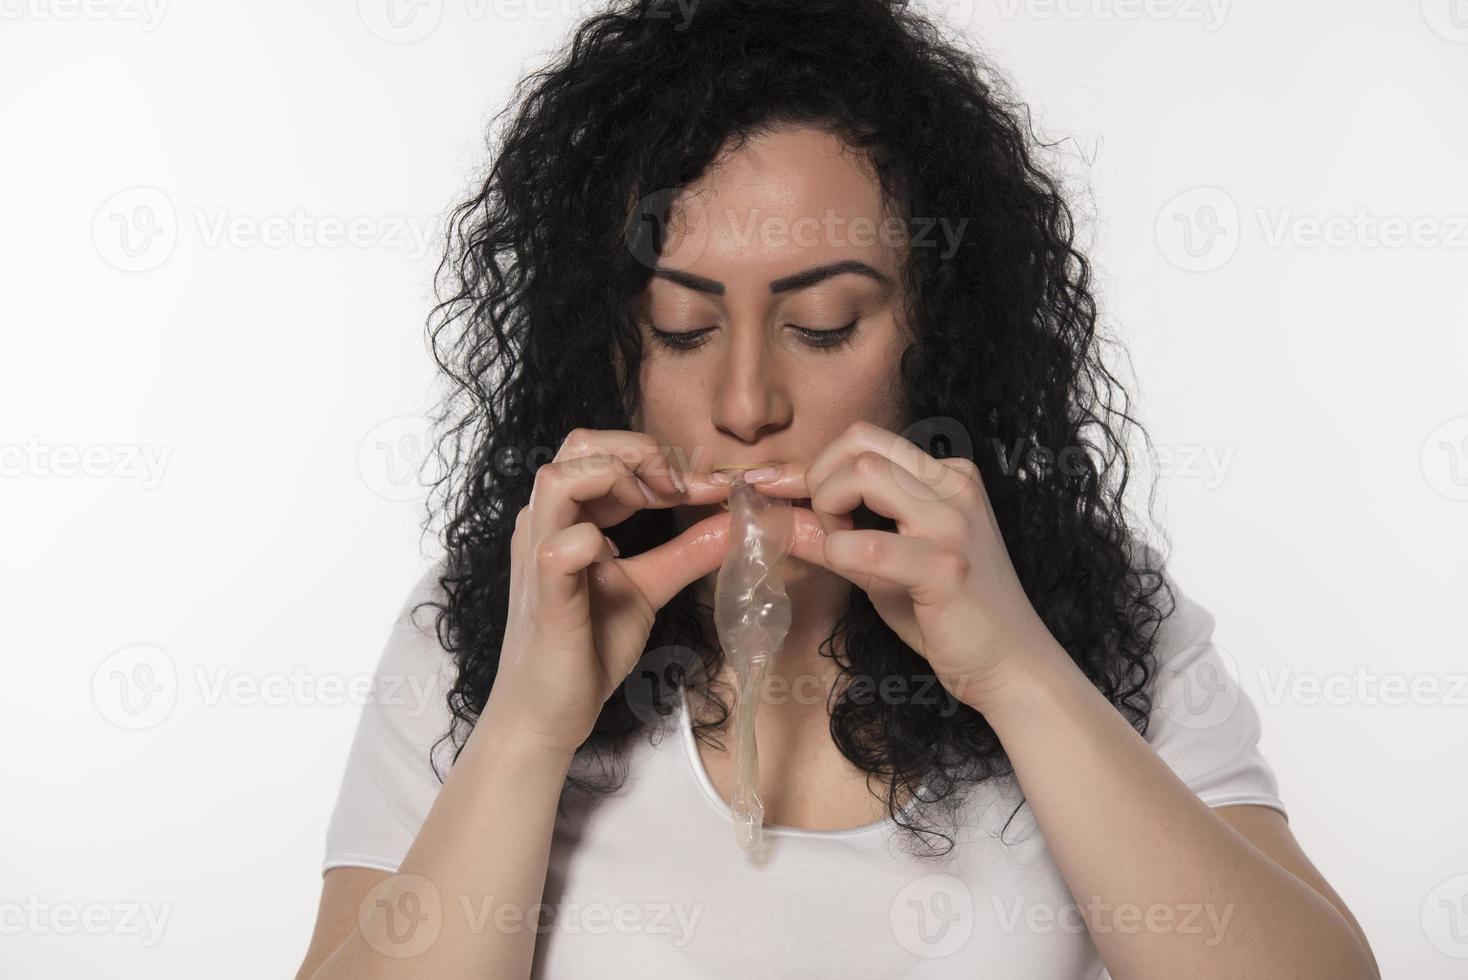 Frau mit Kondom. Sex-Konzept speichern. isoliert foto